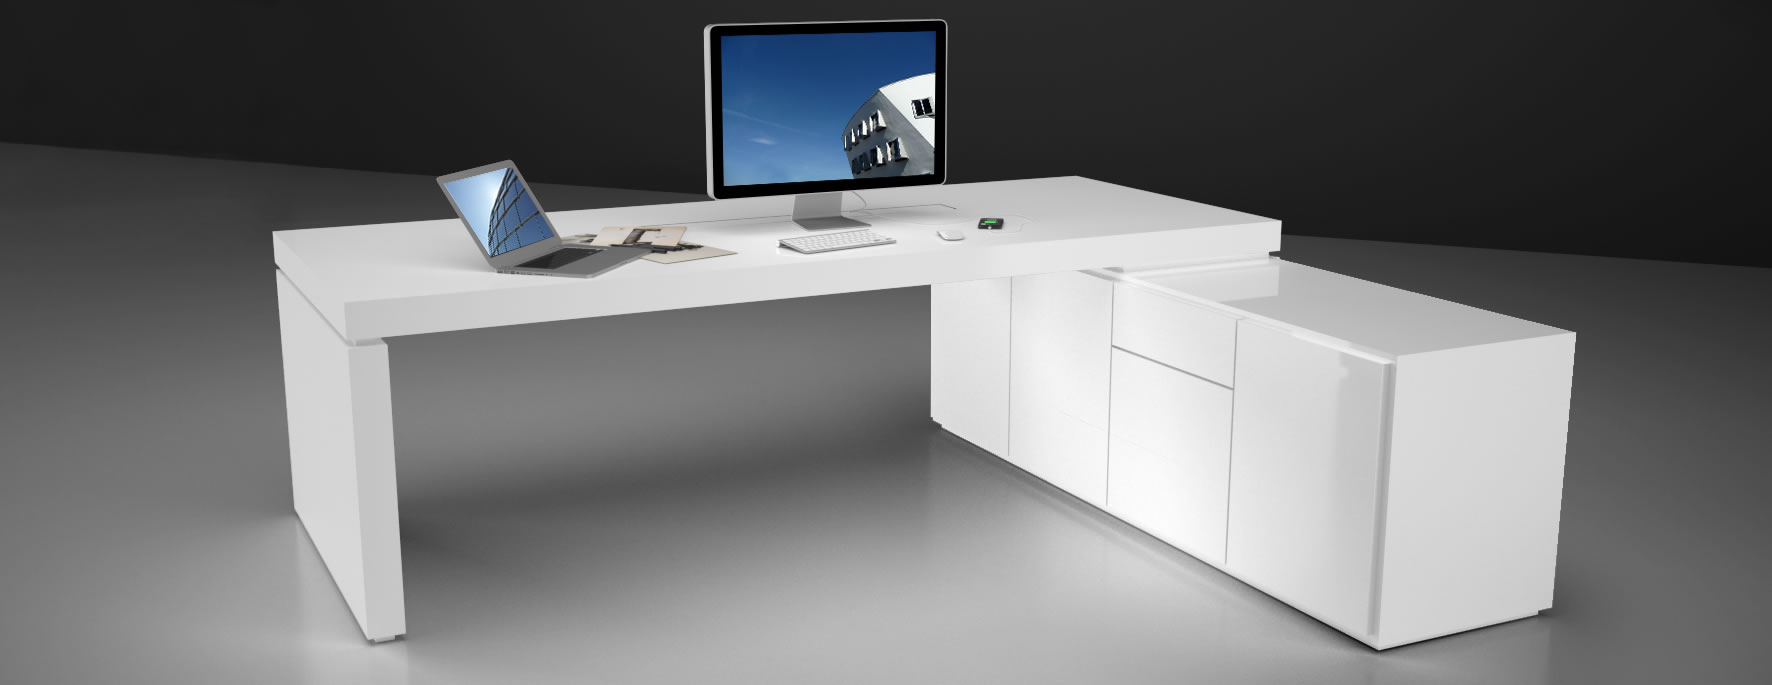 Schreibtisch mit Sideboard in weiß